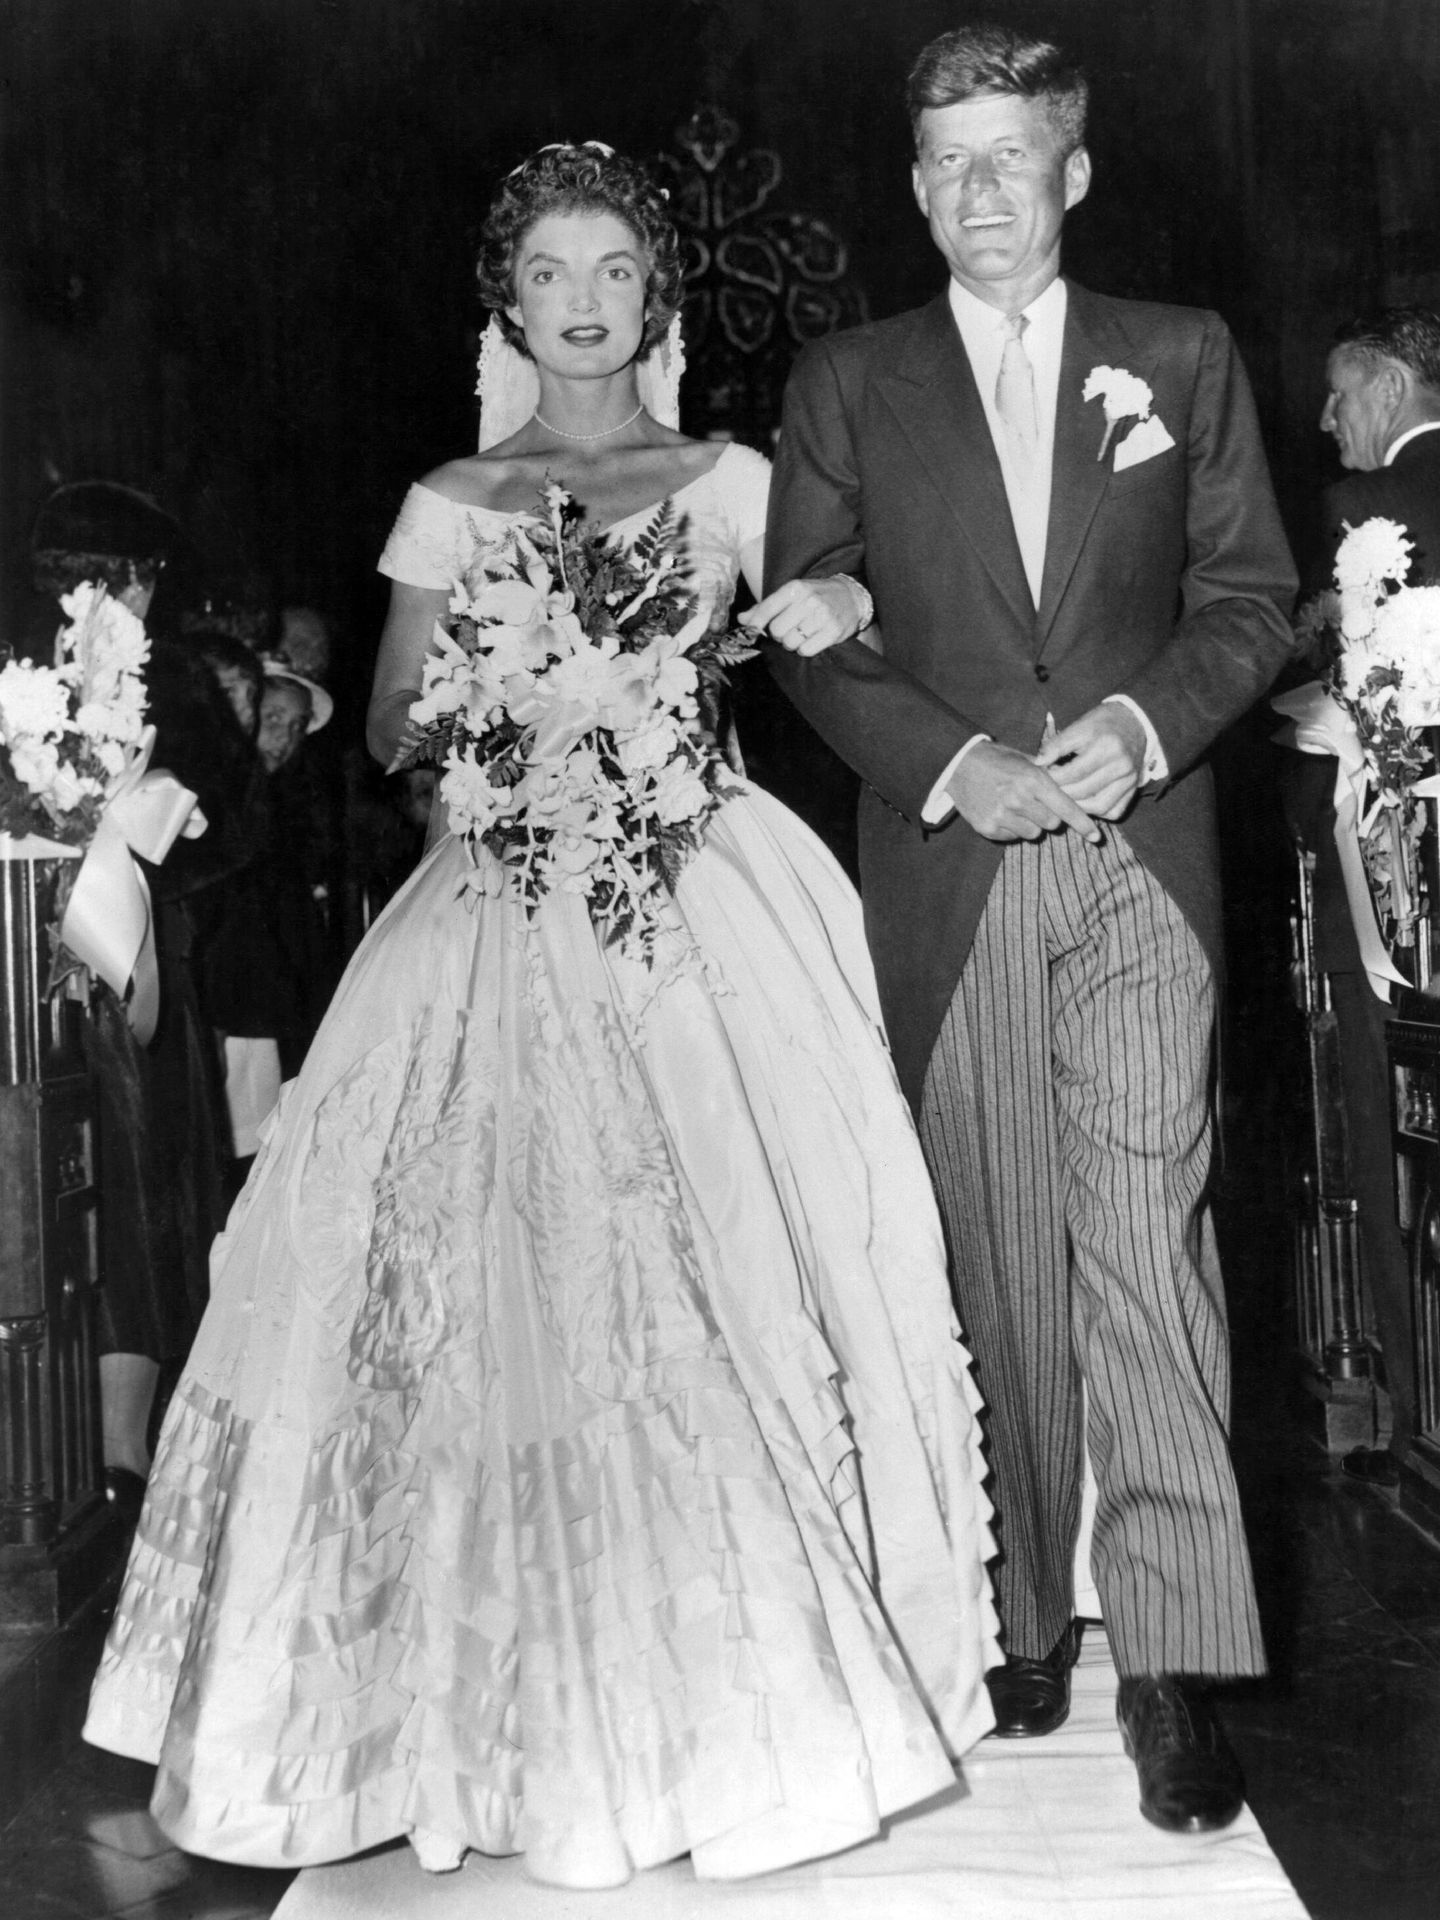 La boda de John y Jacqueline Kennedy se celebró el 12 de septiembre de 1953. (Getty Images)